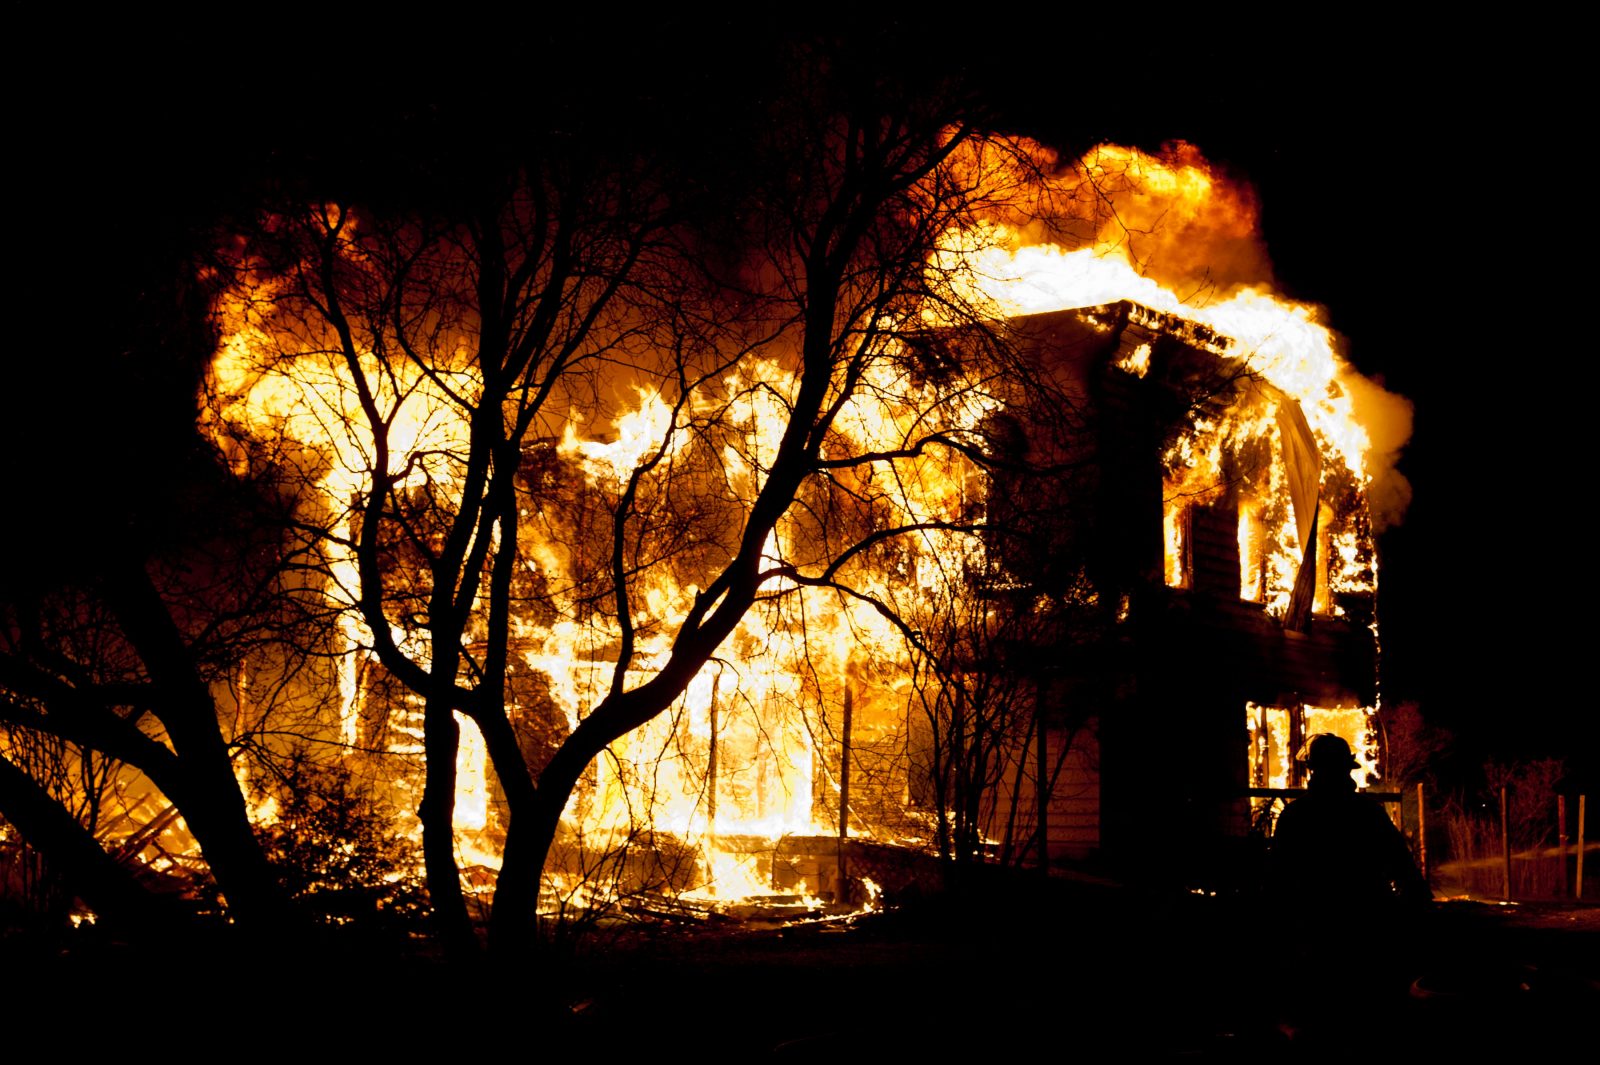 Une résidence incendiée, pour une deuxième fois, en quelques mois (photos et vidéo)